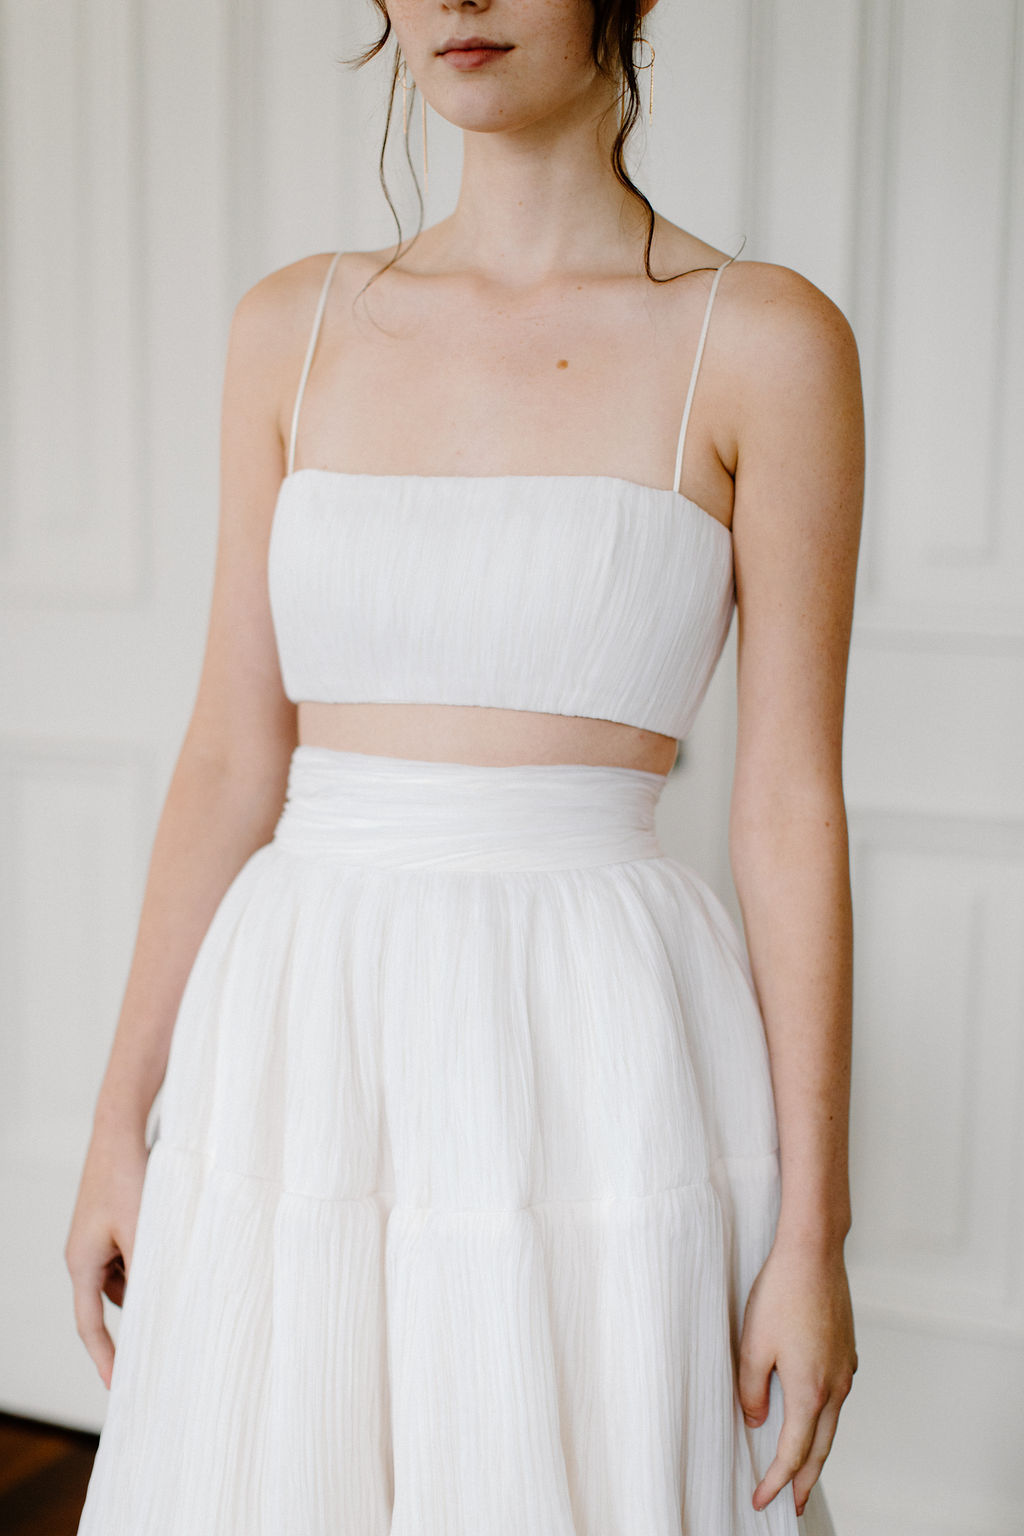 2023 Modern Minimalist Fashion-Forward Wedding Dresses – The LAW Bridal – Bridal Musings 48